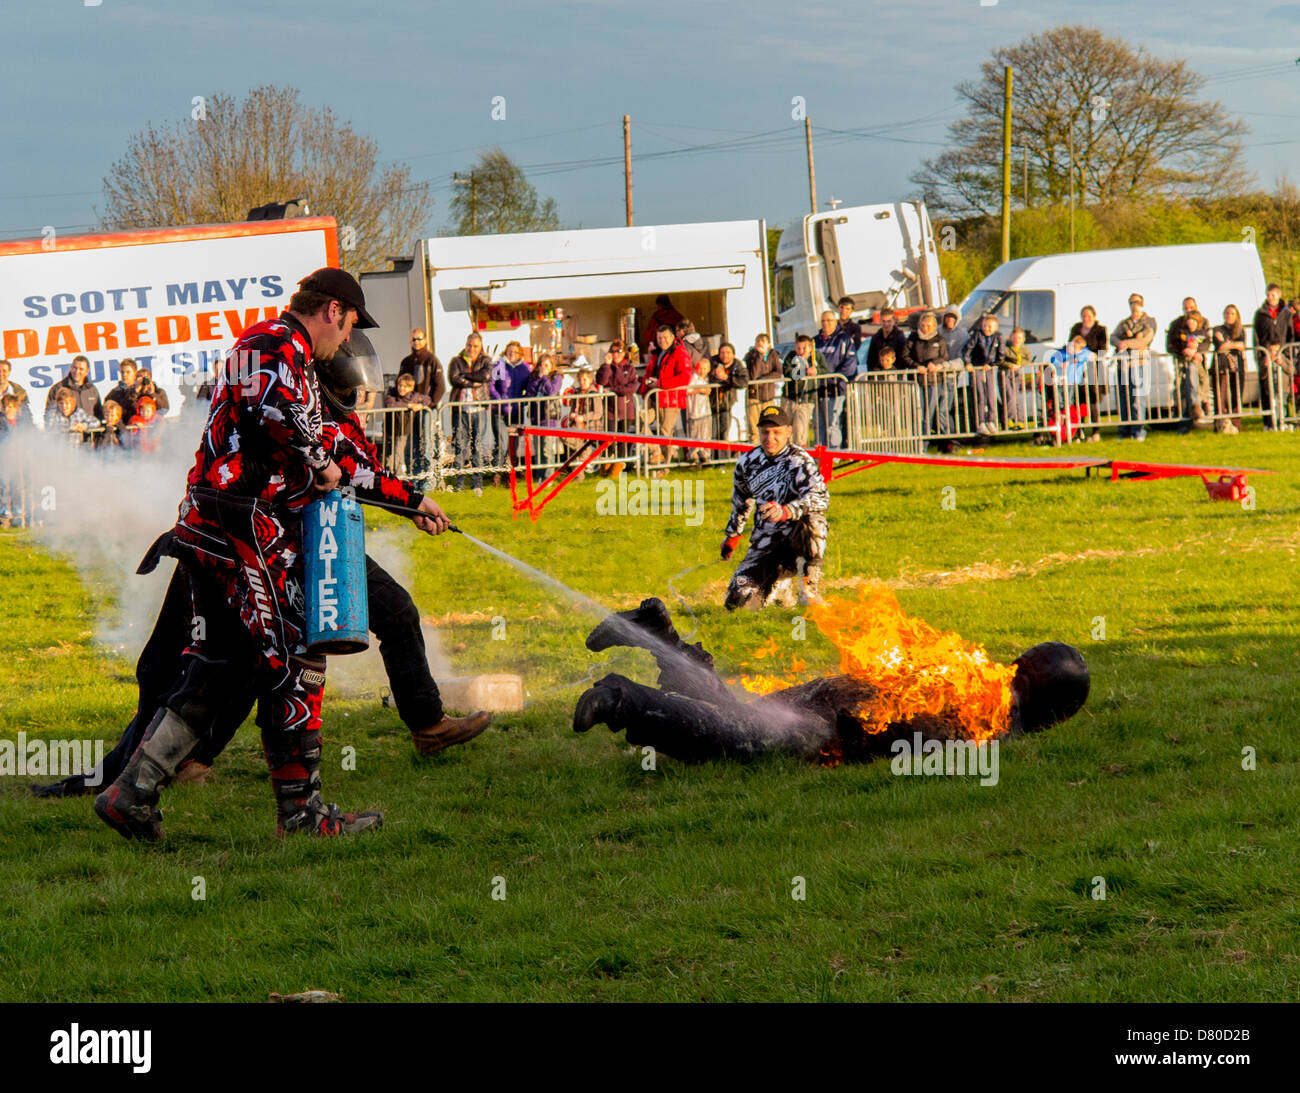 Man on Fire essendo messo fuori con acqua estintore a Scott può's stunt show nel Derbyshire, Inghilterra Foto Stock